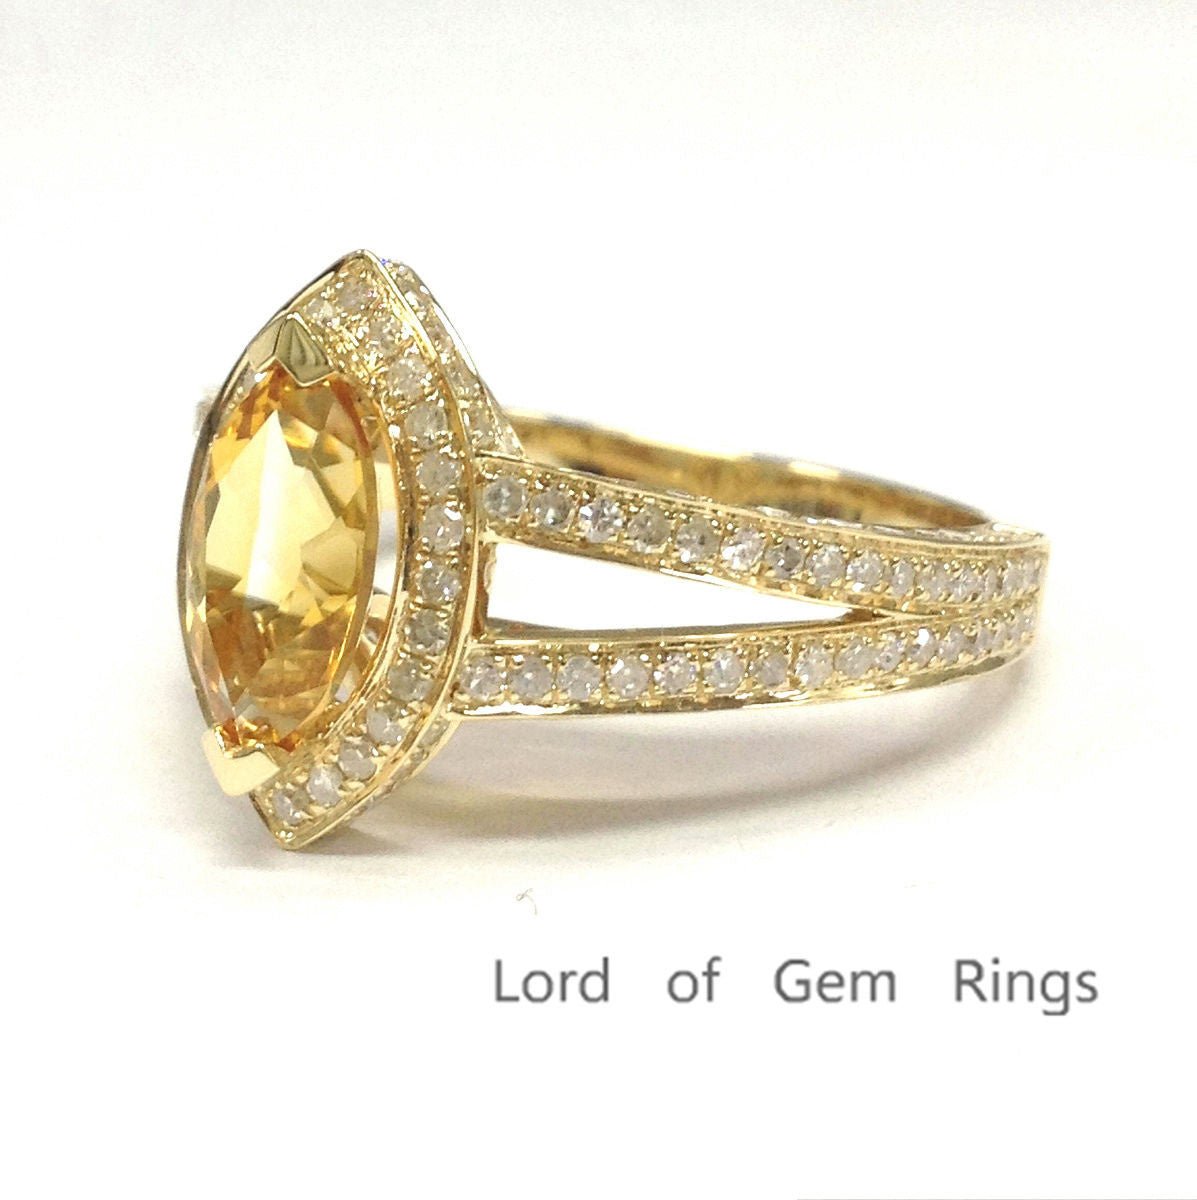 Marquise Citrine Engagement Ring whg Diamond Split Shank - Lord of Gem Rings